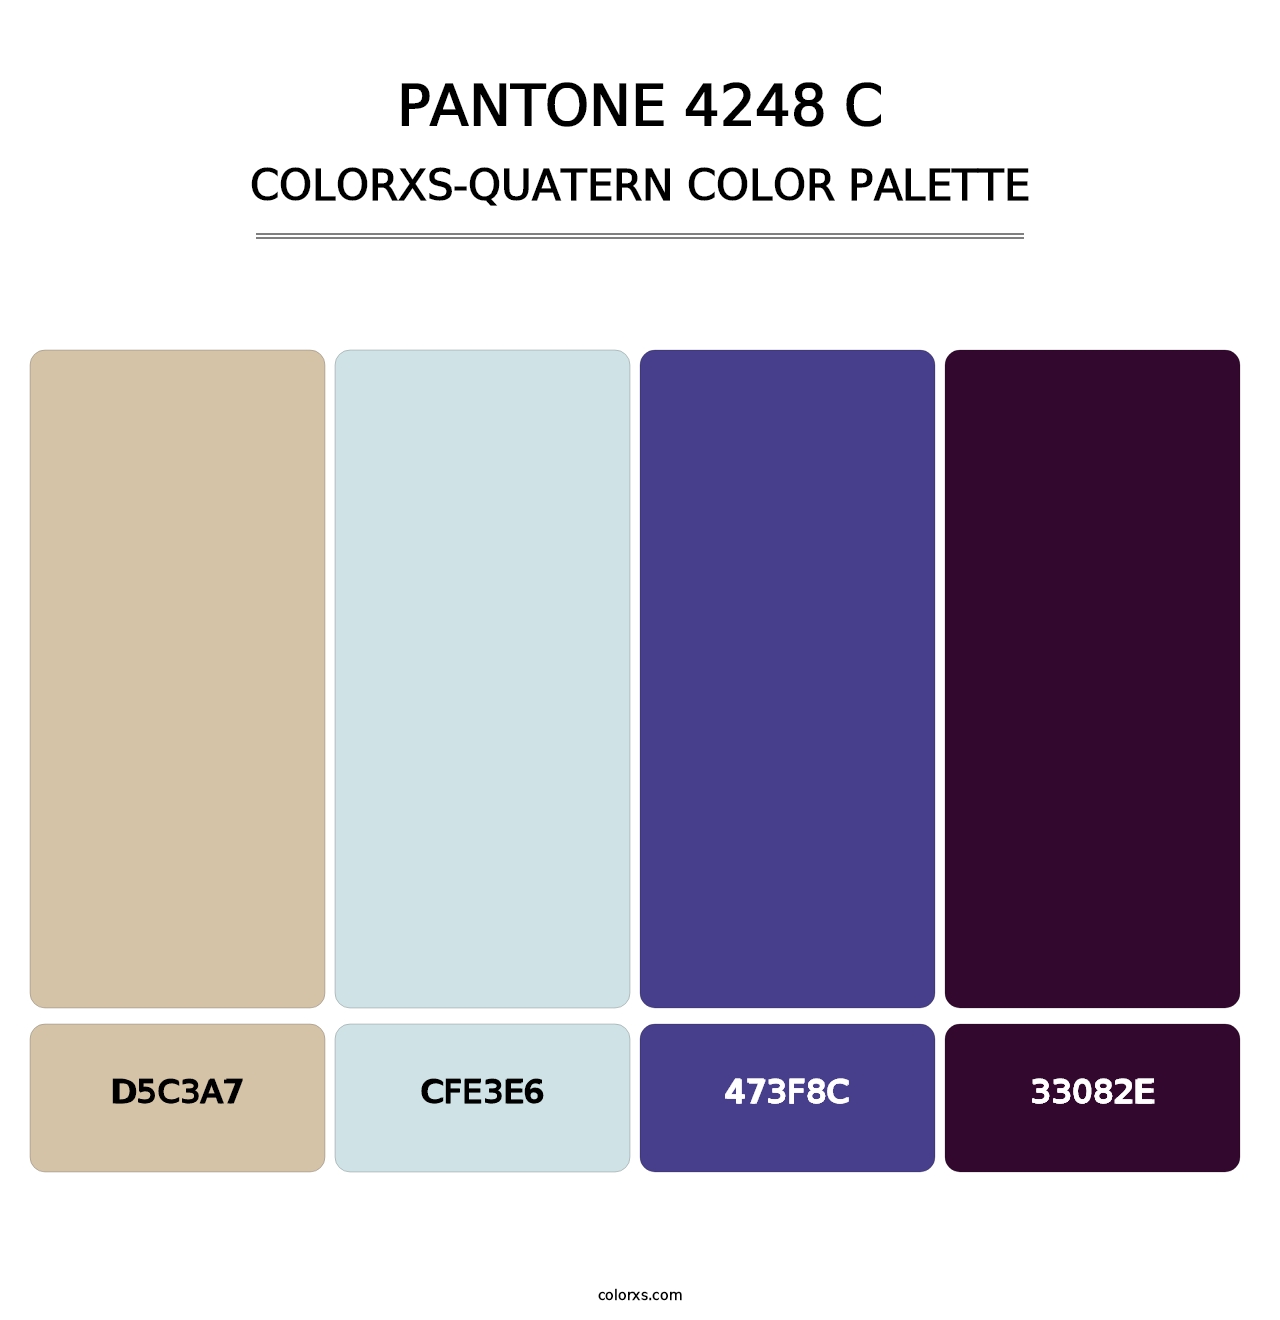 PANTONE 4248 C - Colorxs Quatern Palette